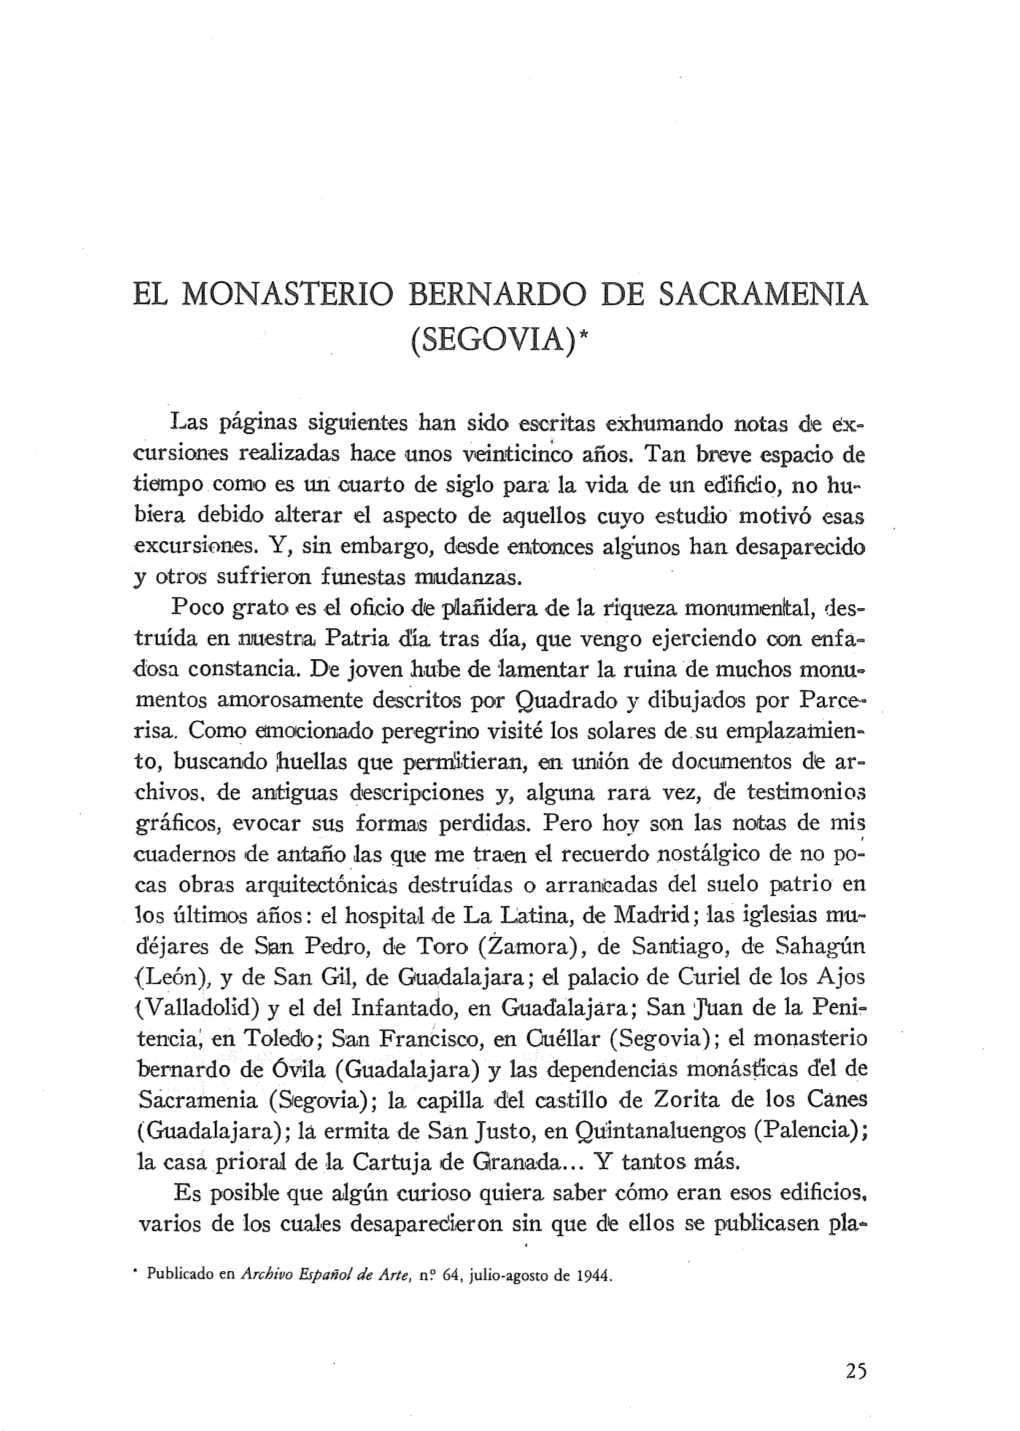 El Monasterio Bernardo De Sacramenia (Segovia)*